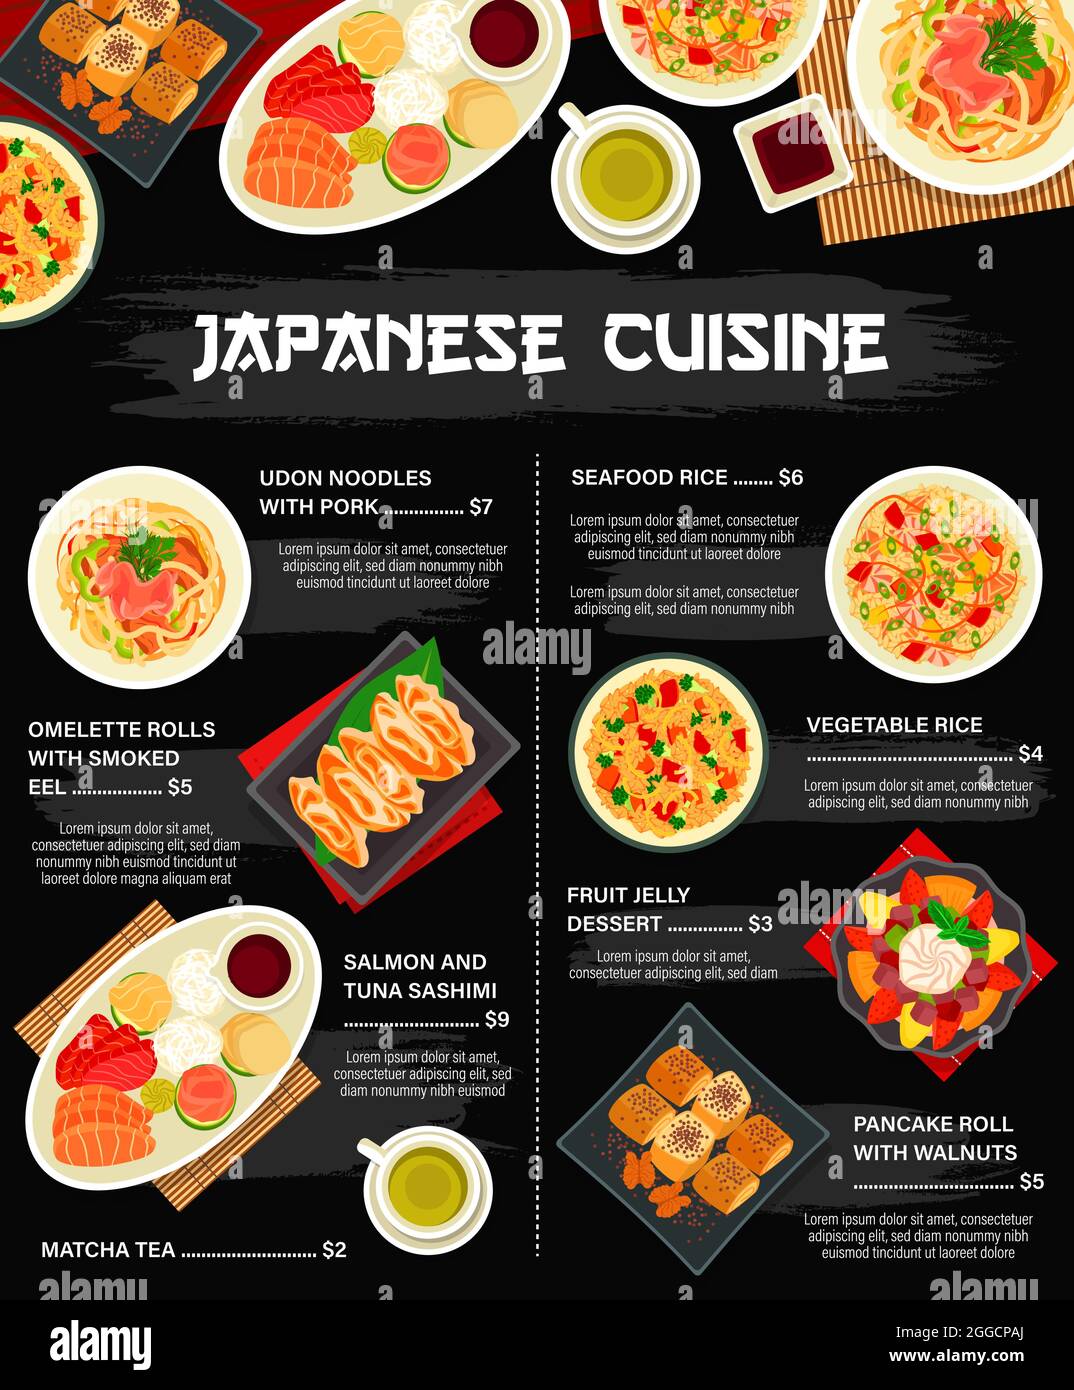 Thưởng thức ẩm thực Nhật Bản là trải nghiệm không thể bỏ lỡ! Với sự kết hợp hoàn hảo giữa hương vị và hình dáng, thực khách sẽ có cảm giác như đang đến trực tiếp đất nước hoa anh đào. Hãy chuẩn bị tinh thần và thoải mái thưởng thức ngay! 